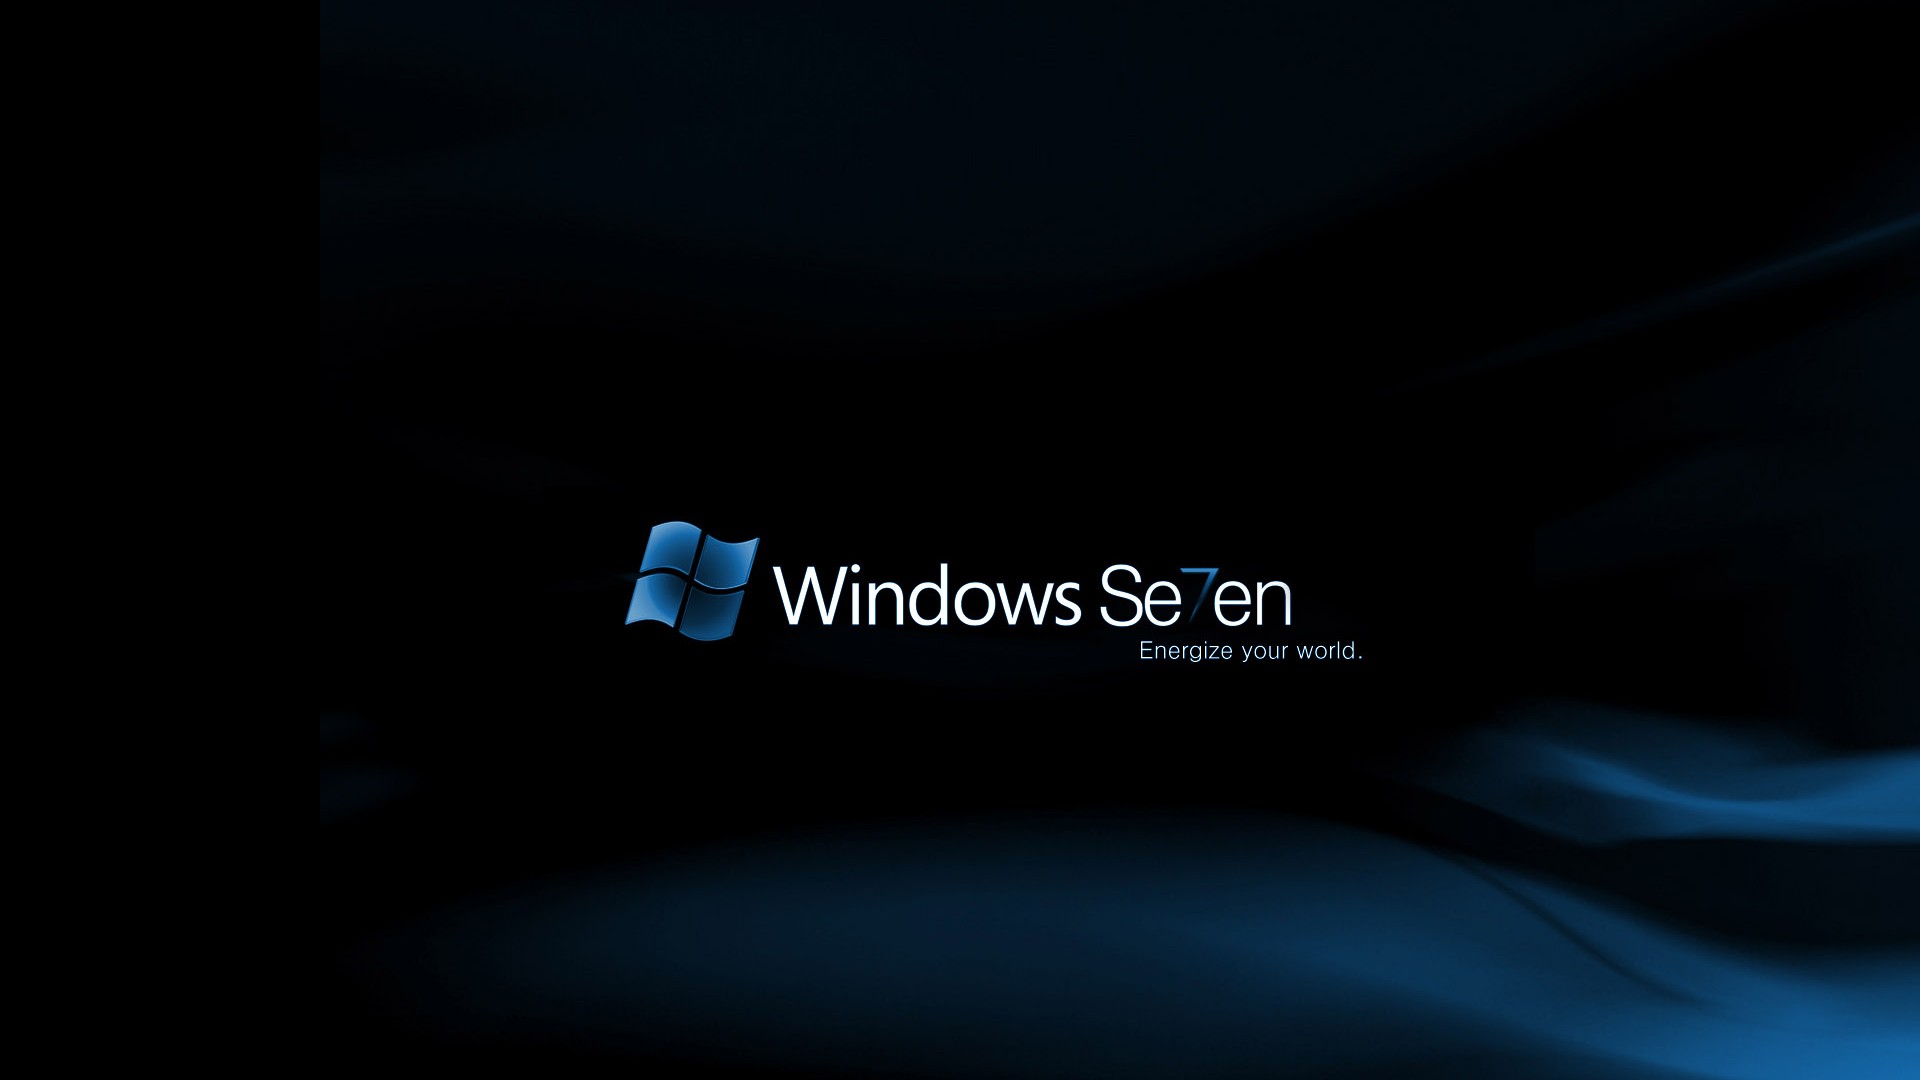 Windows7 tema fondo de pantalla (1) #14 - 1920x1080